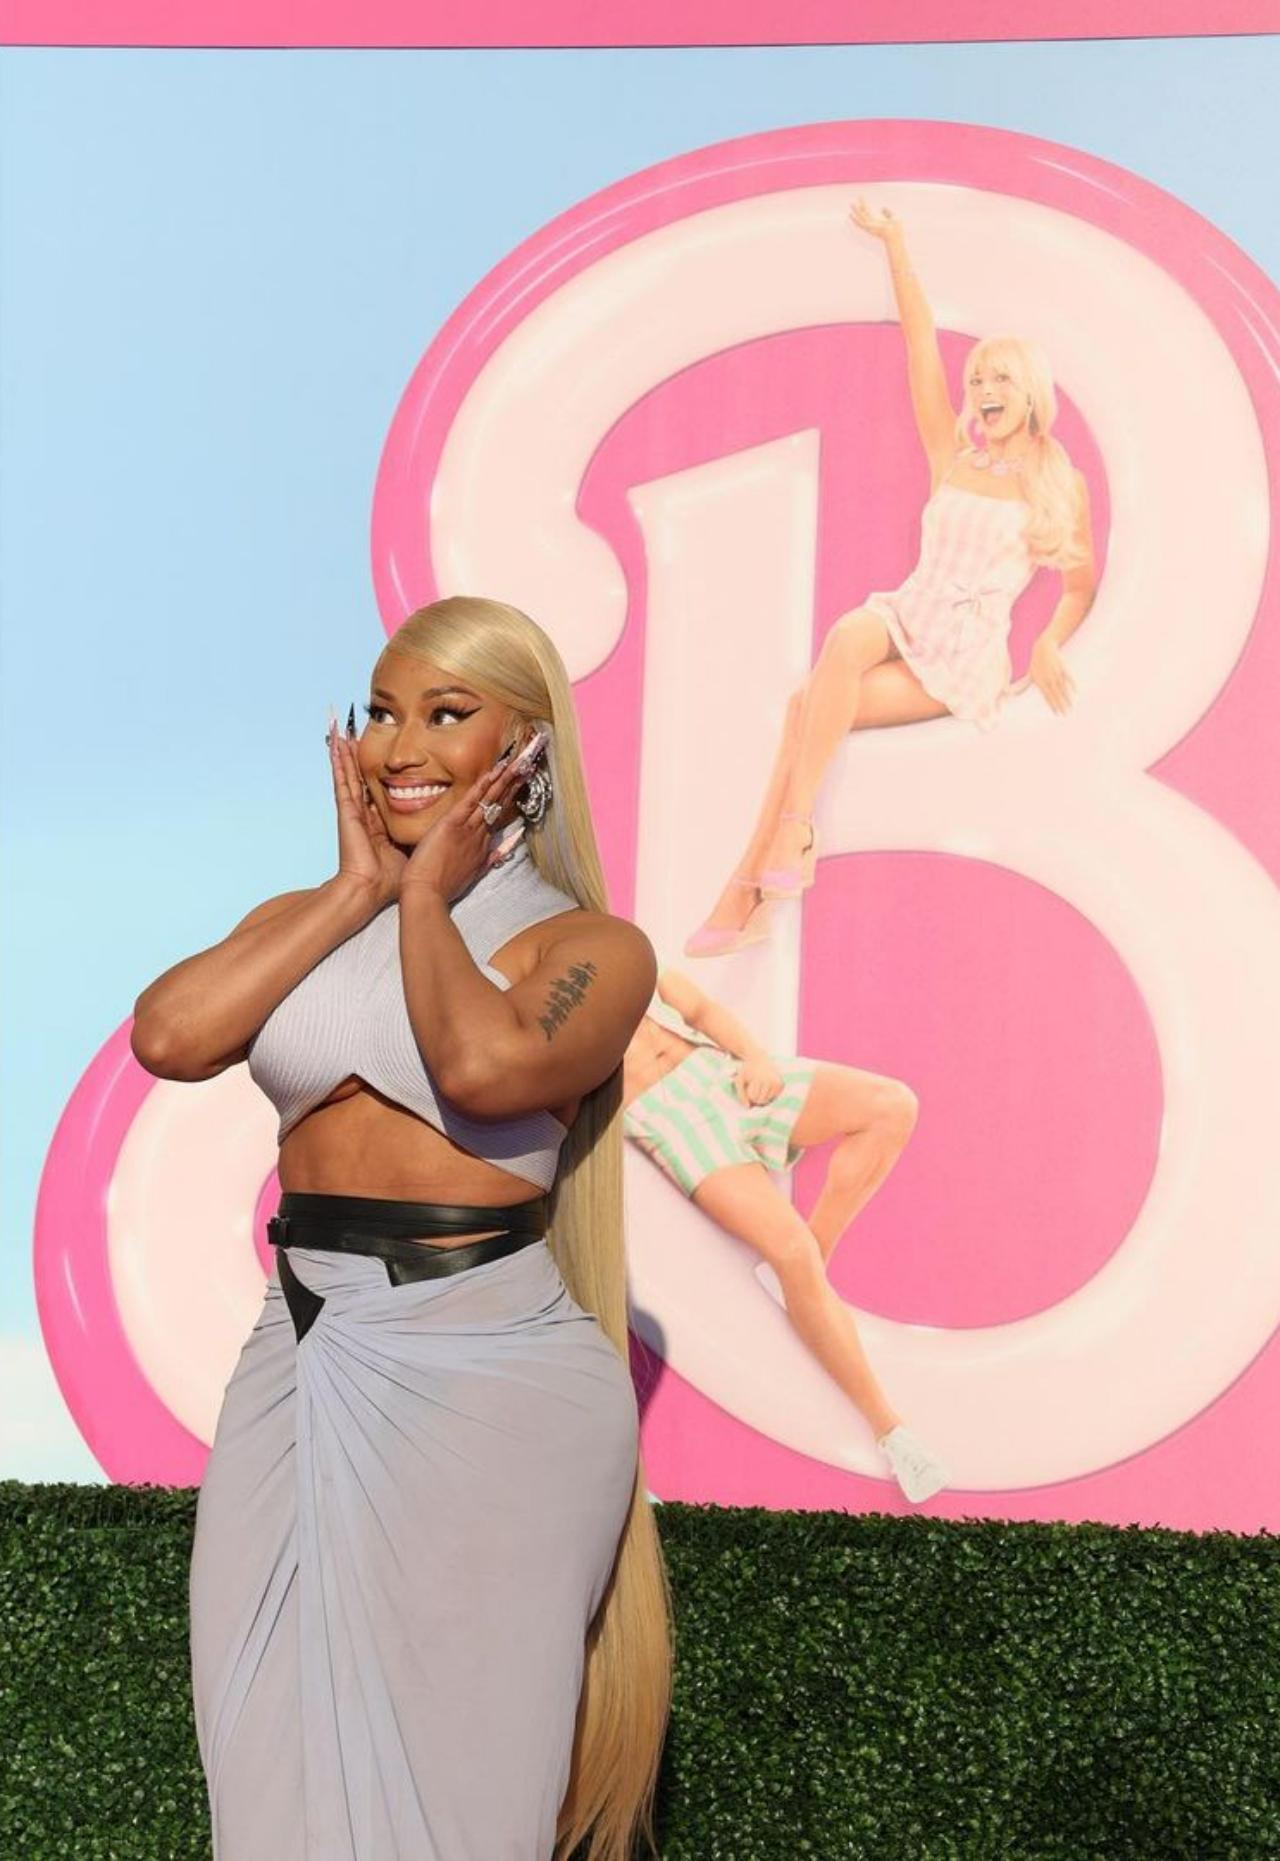 With her long blond hair, Nicki Minaj is definitely acing the Barbie aesthetic